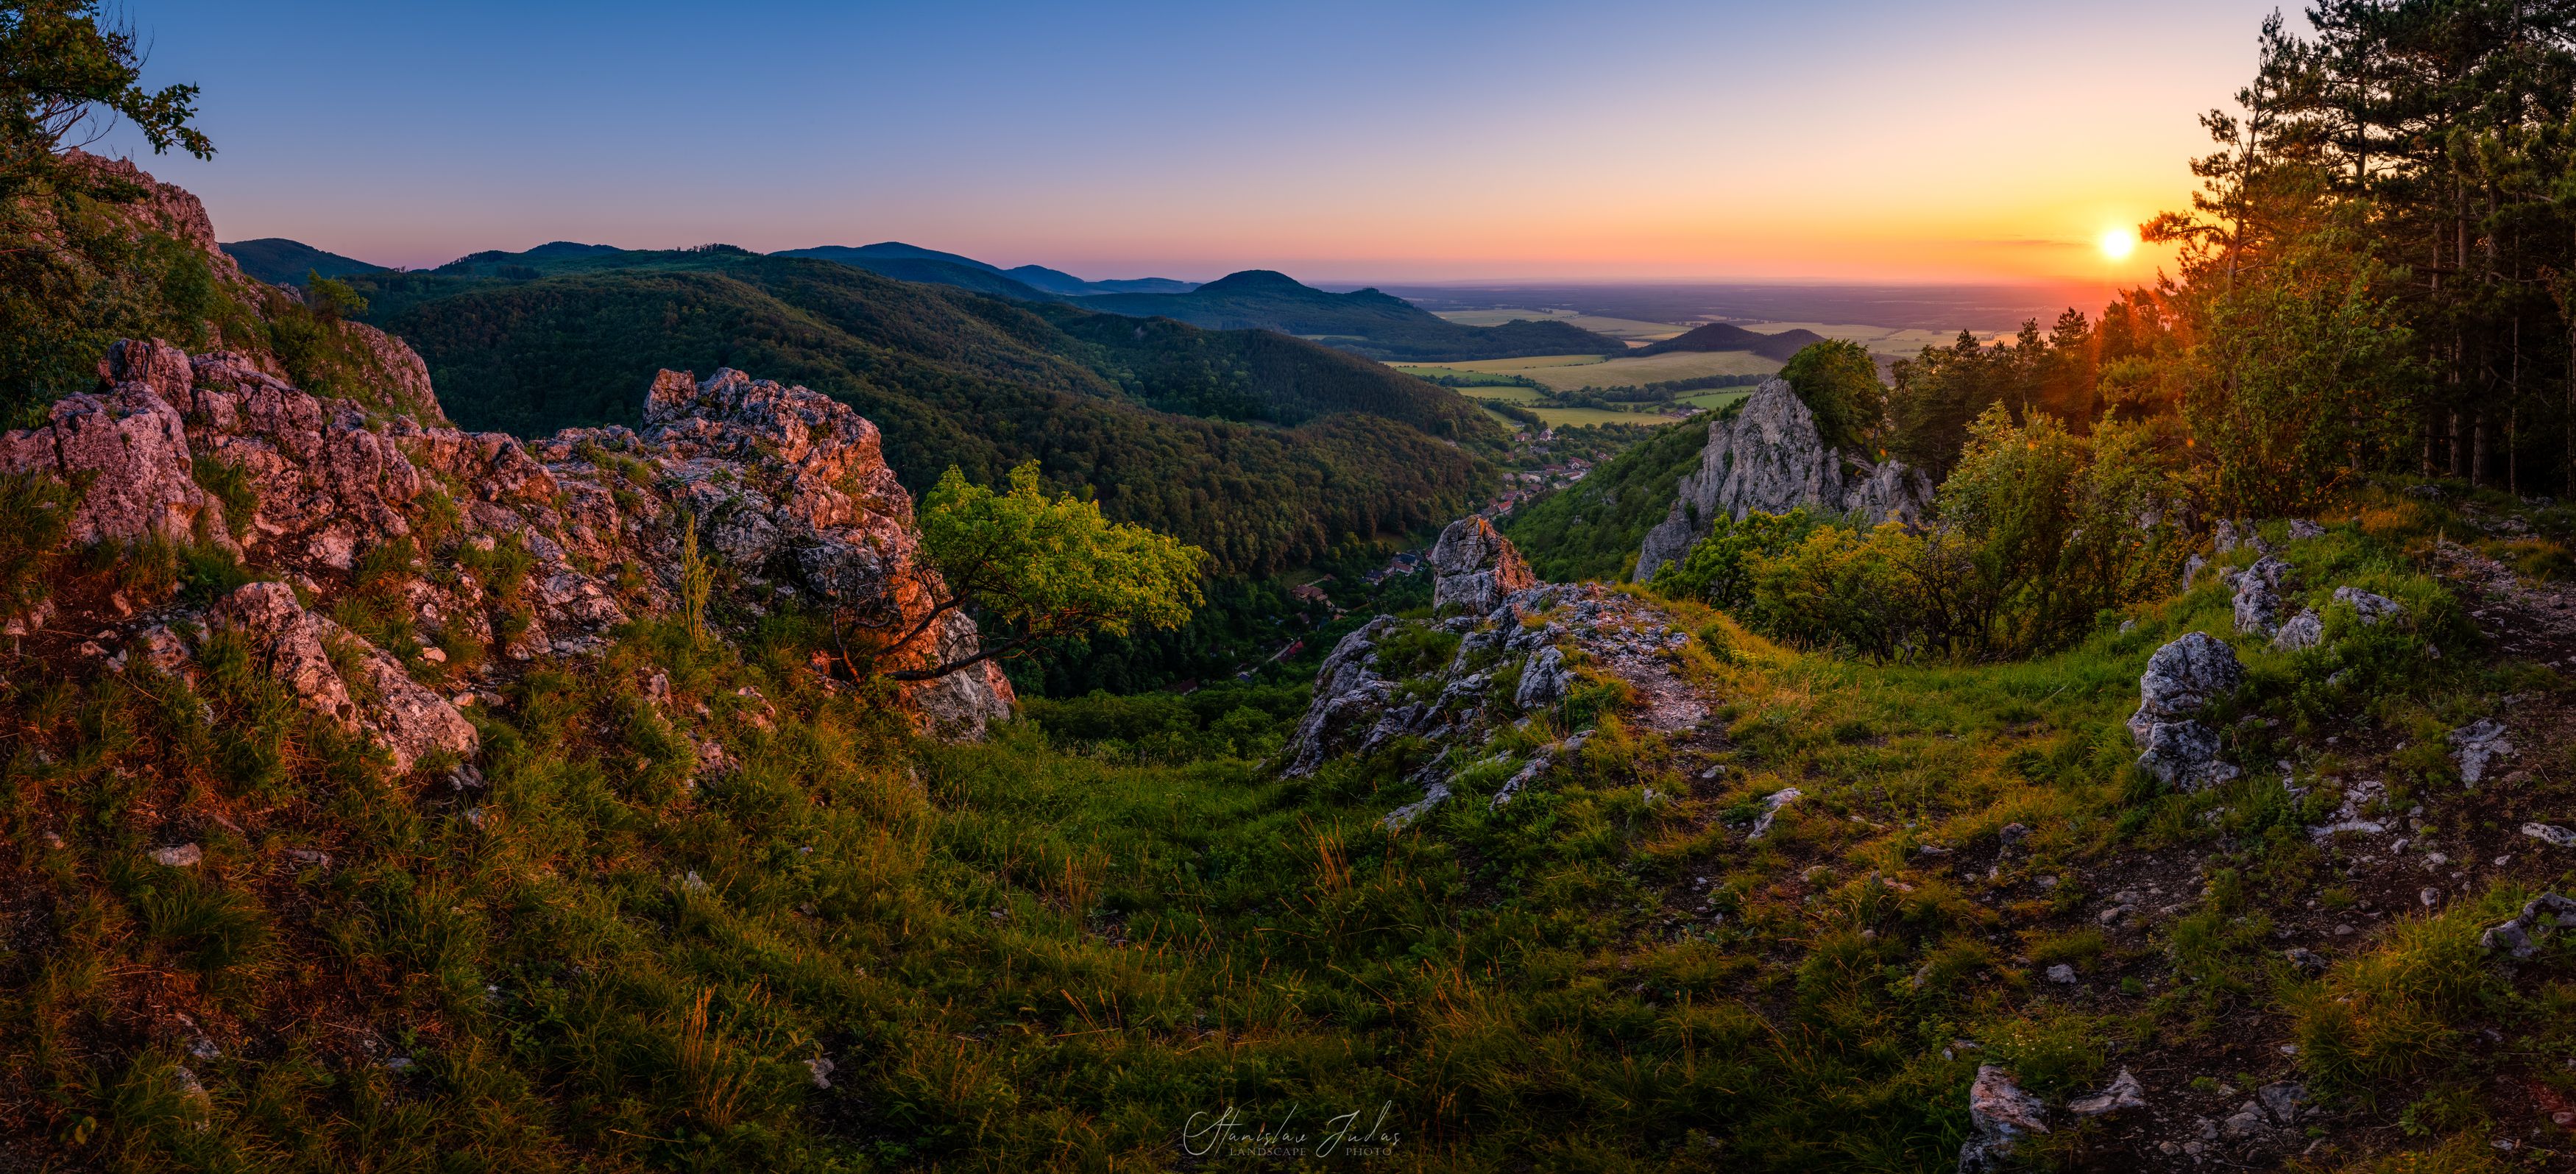 slovakia, sunset, mountains, color, Stanislav Judas